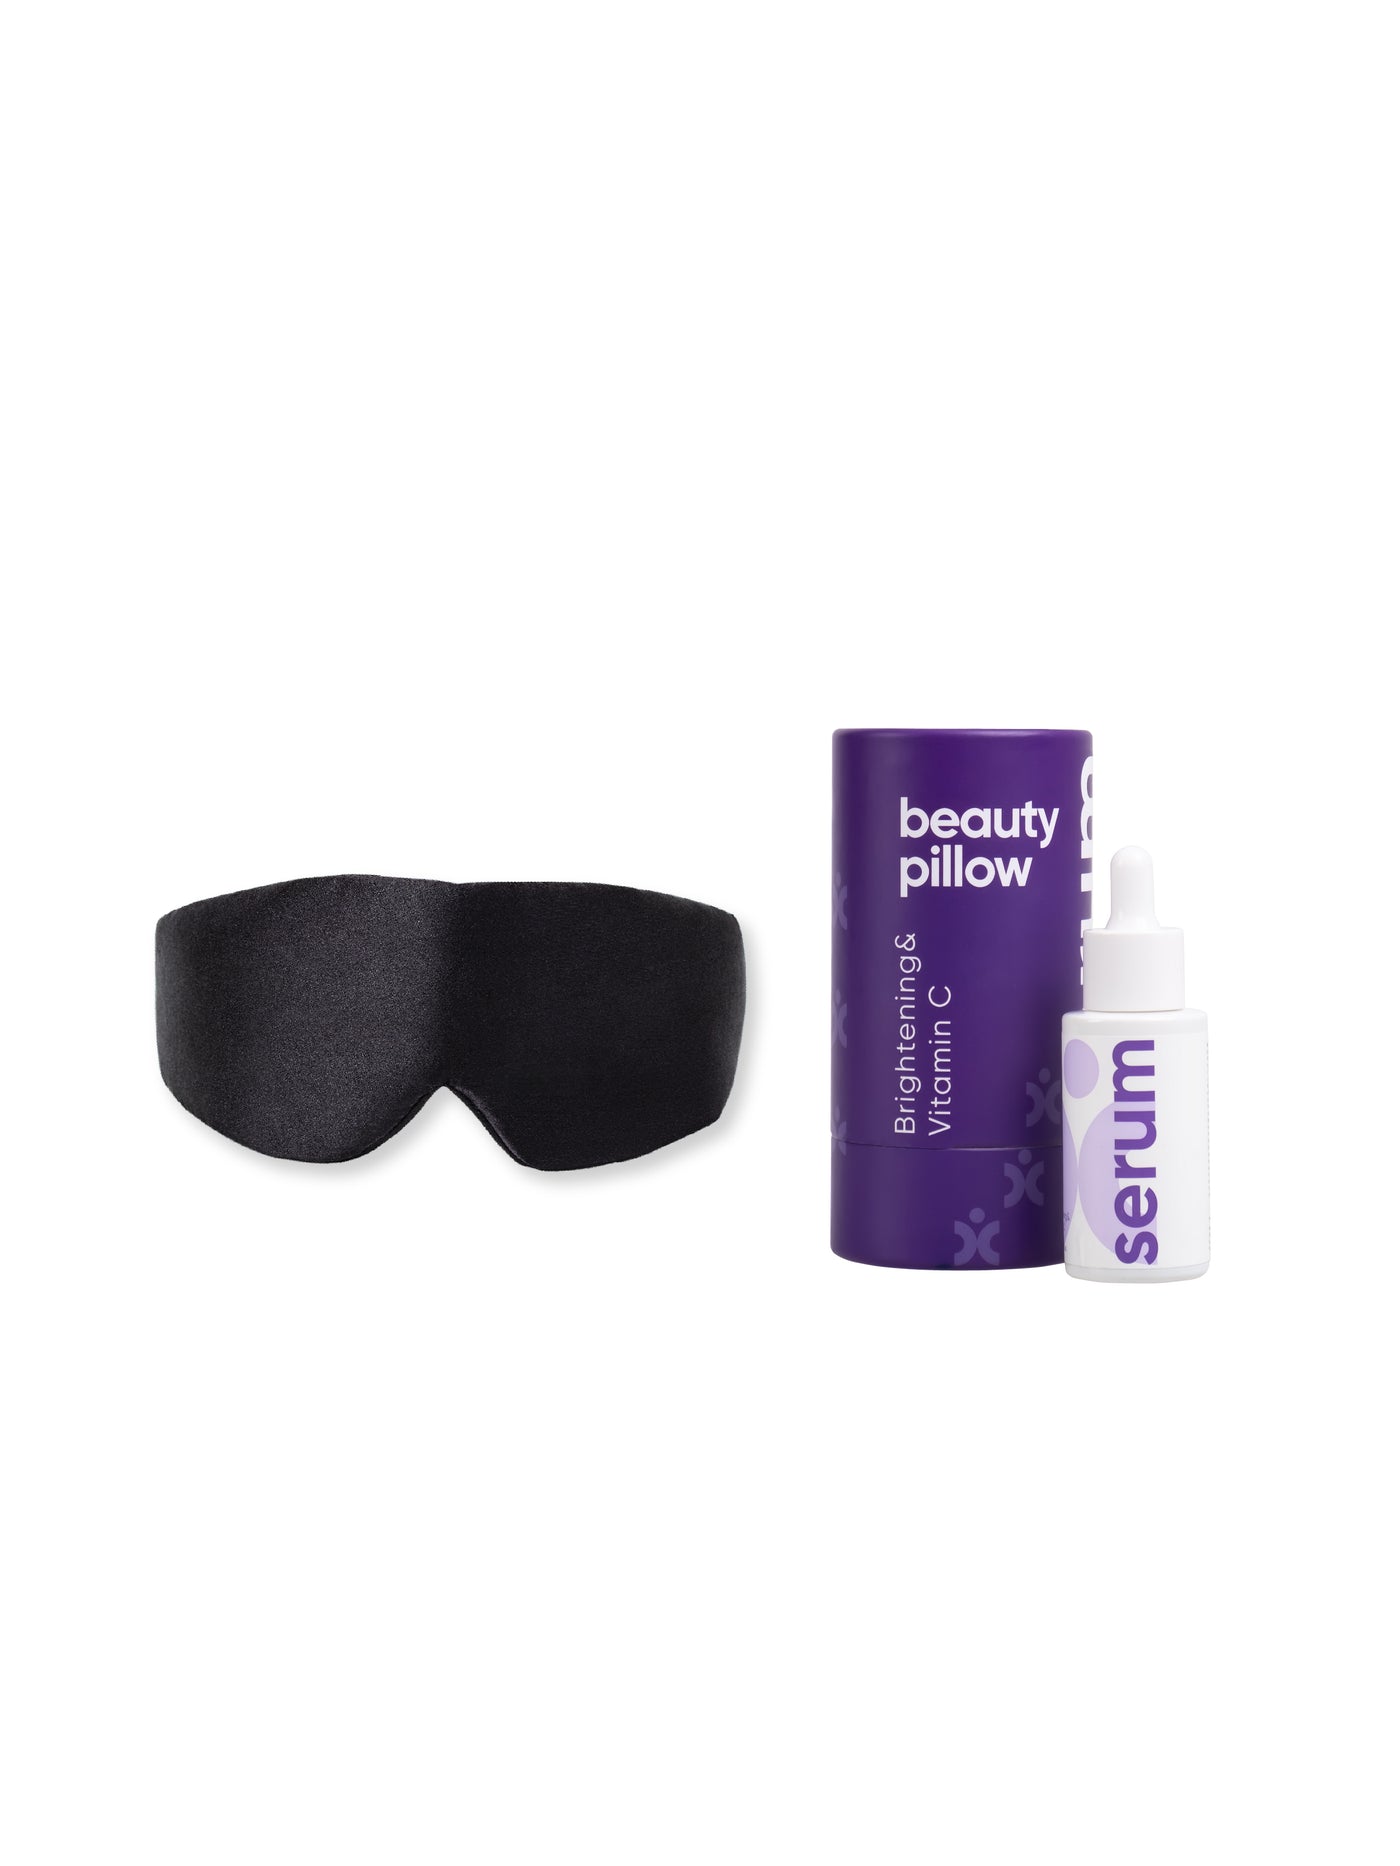 %100 İpek Uyku Maskesi Göz Bandı Siyah Renk + Aydınlatıcı C Vitamini Serumu Seti